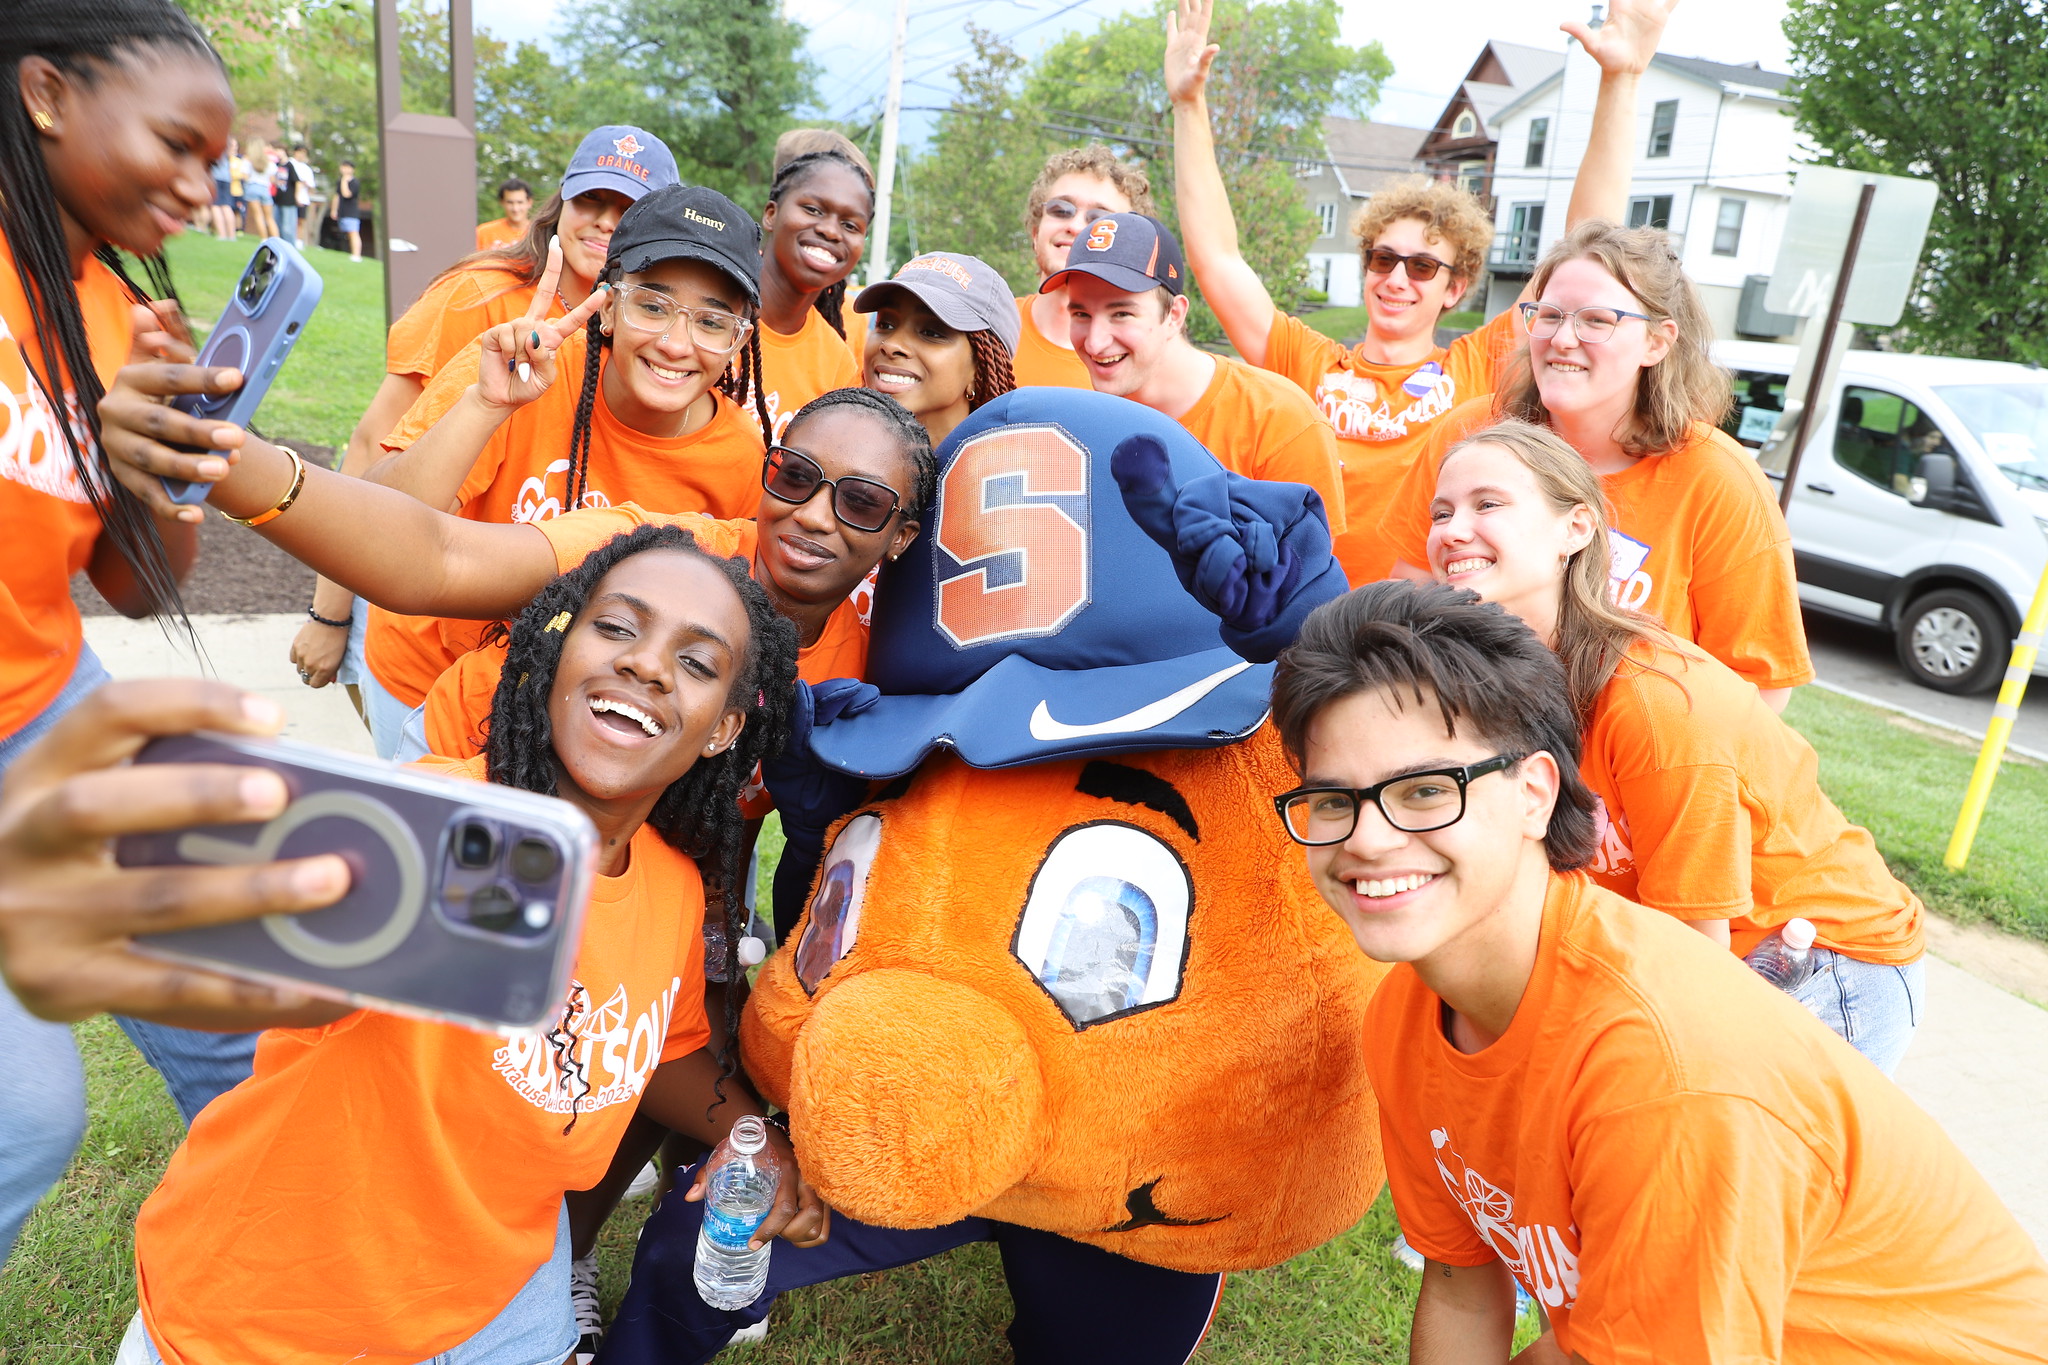 Students in orange shirts gather around Otto the Orange to take a photo